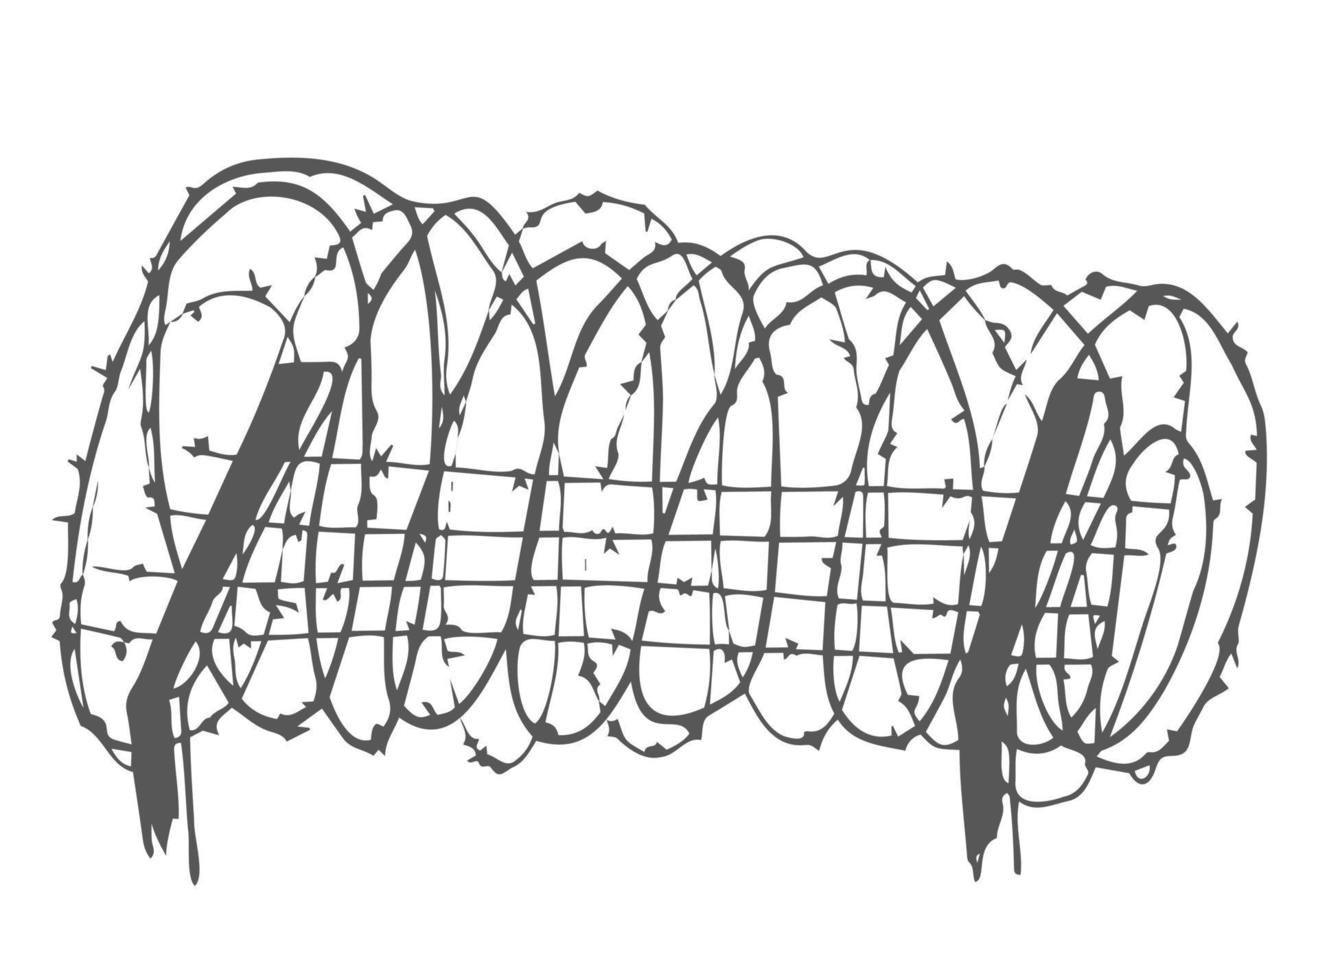 metallo acciaio spinato spirale filo con spine o picchi realistico vettore illustrazione isolato su trasparente sfondo con ombra. scherma o barriera scarabocchio elemento